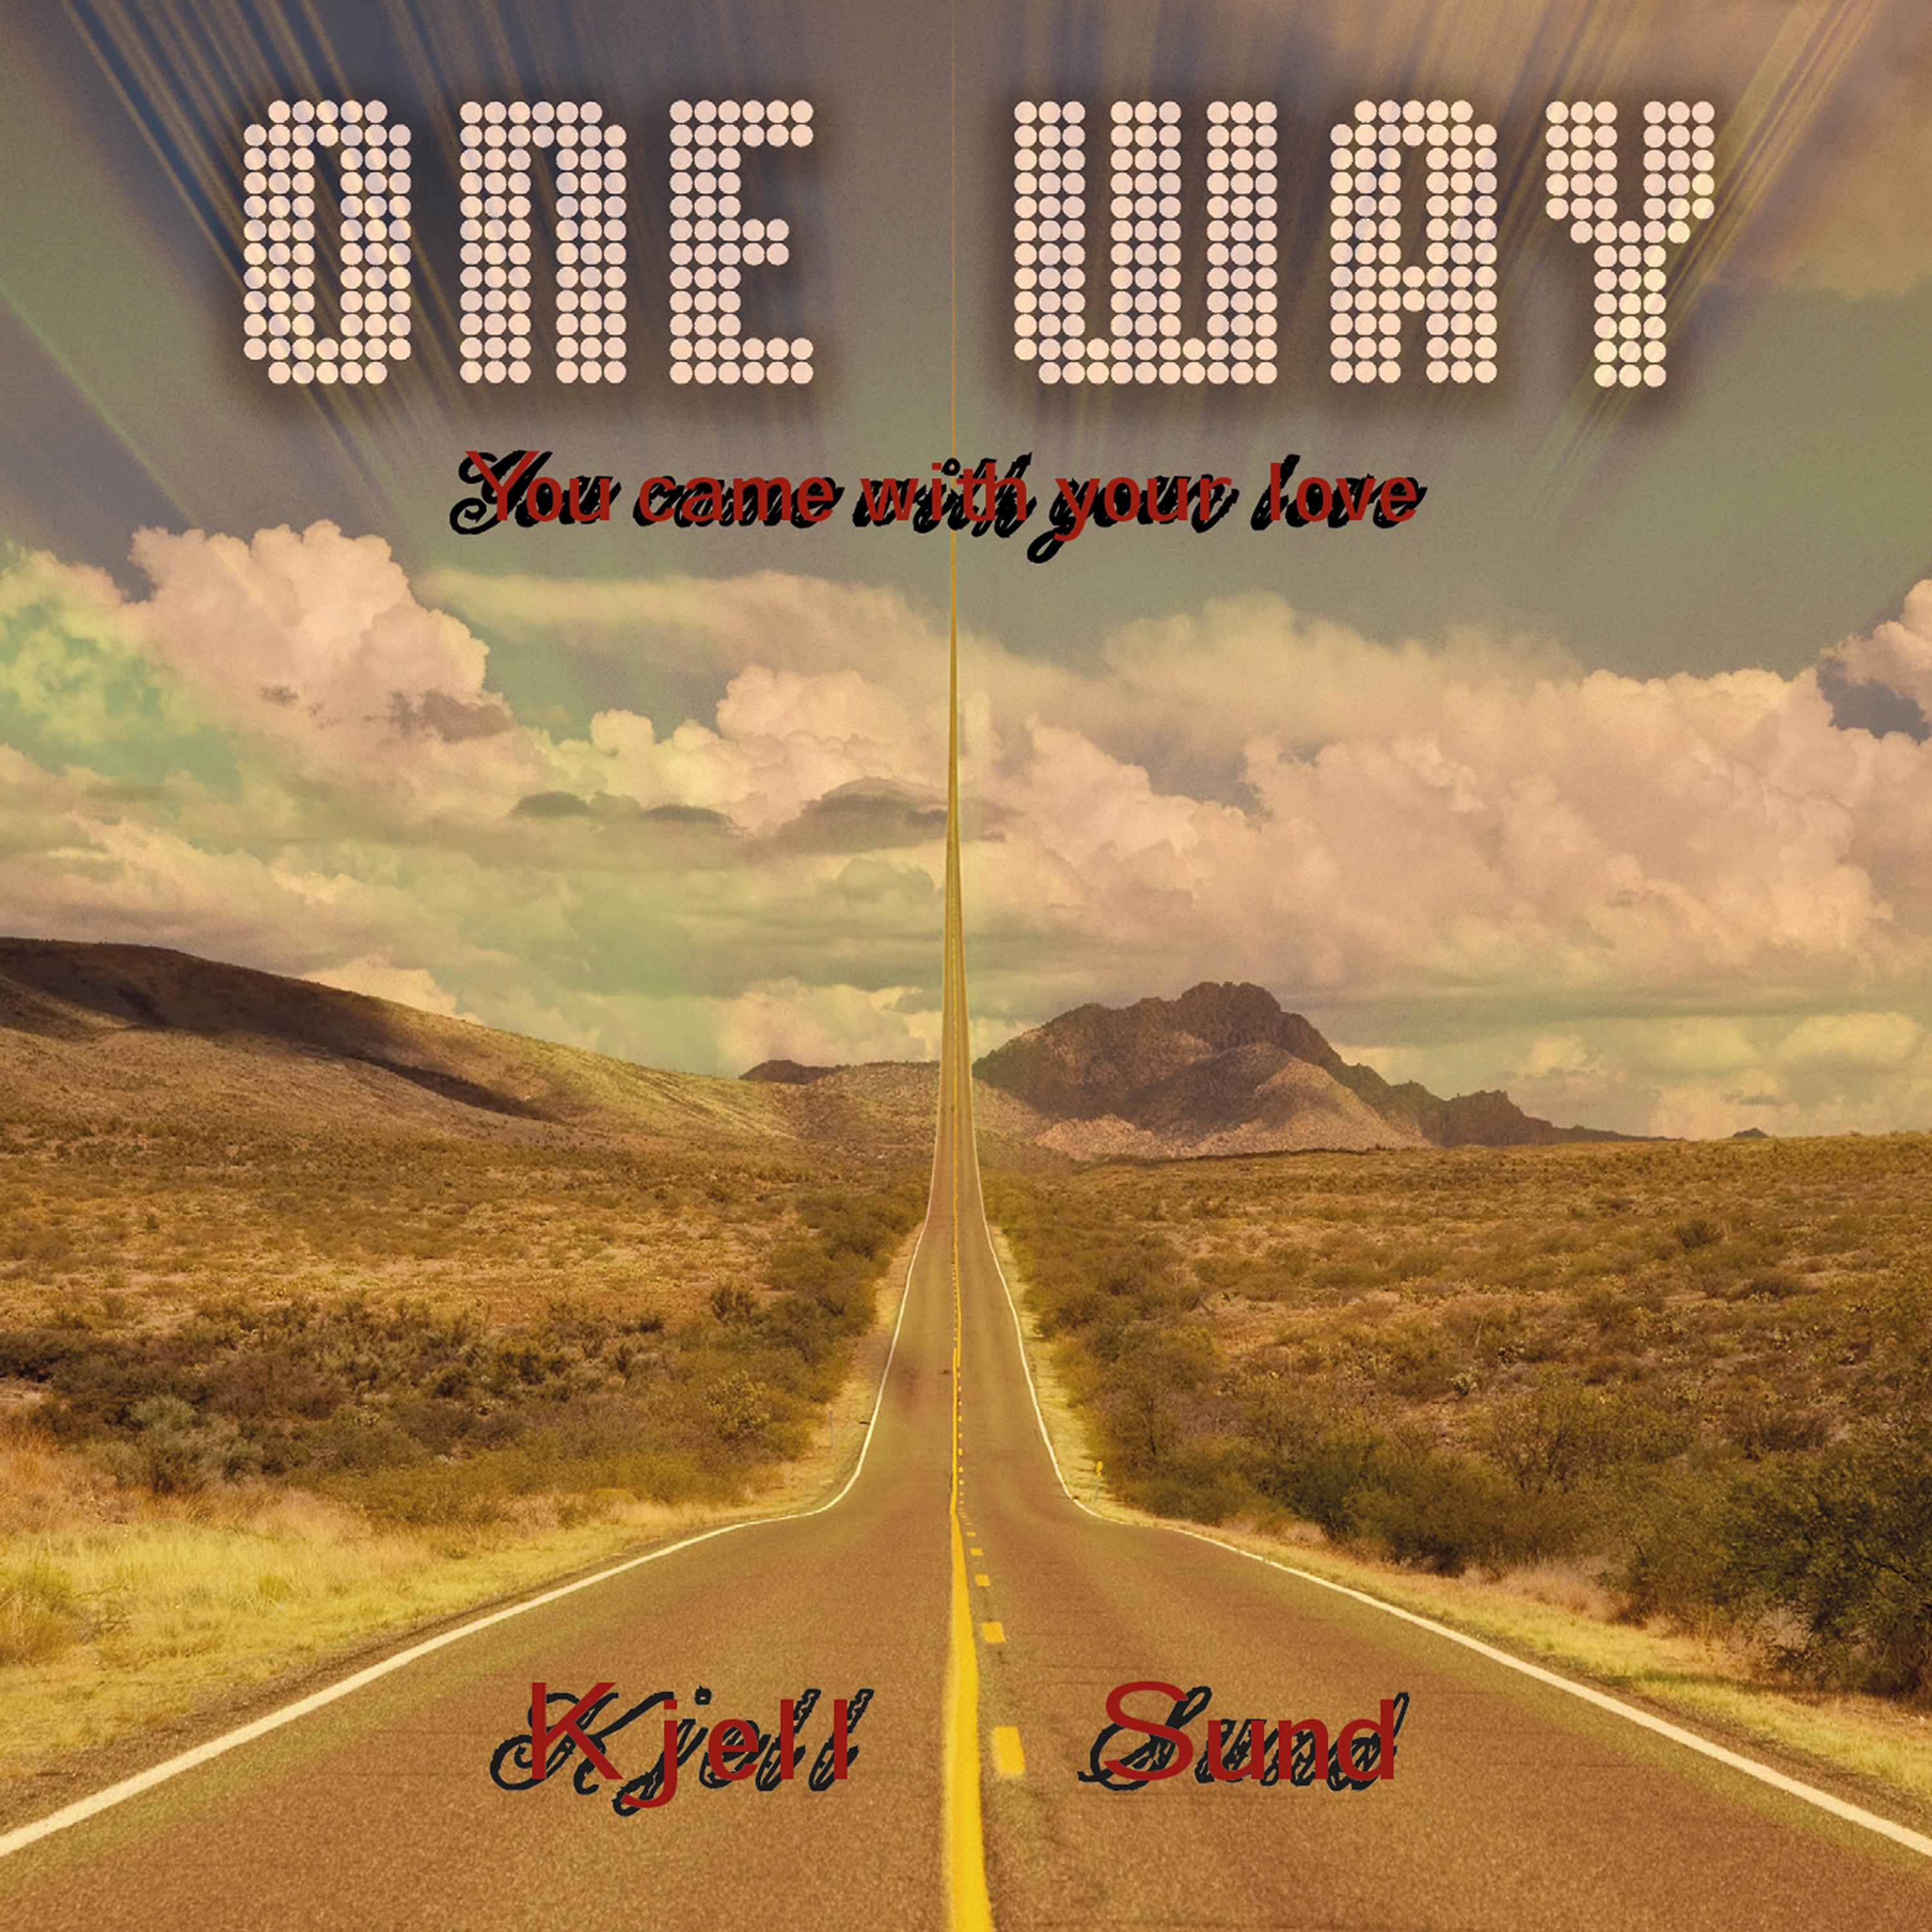 Твоя дорога слушать. One way Jesus. One way cutie pie. Путь альбом. One way песня динамичная.